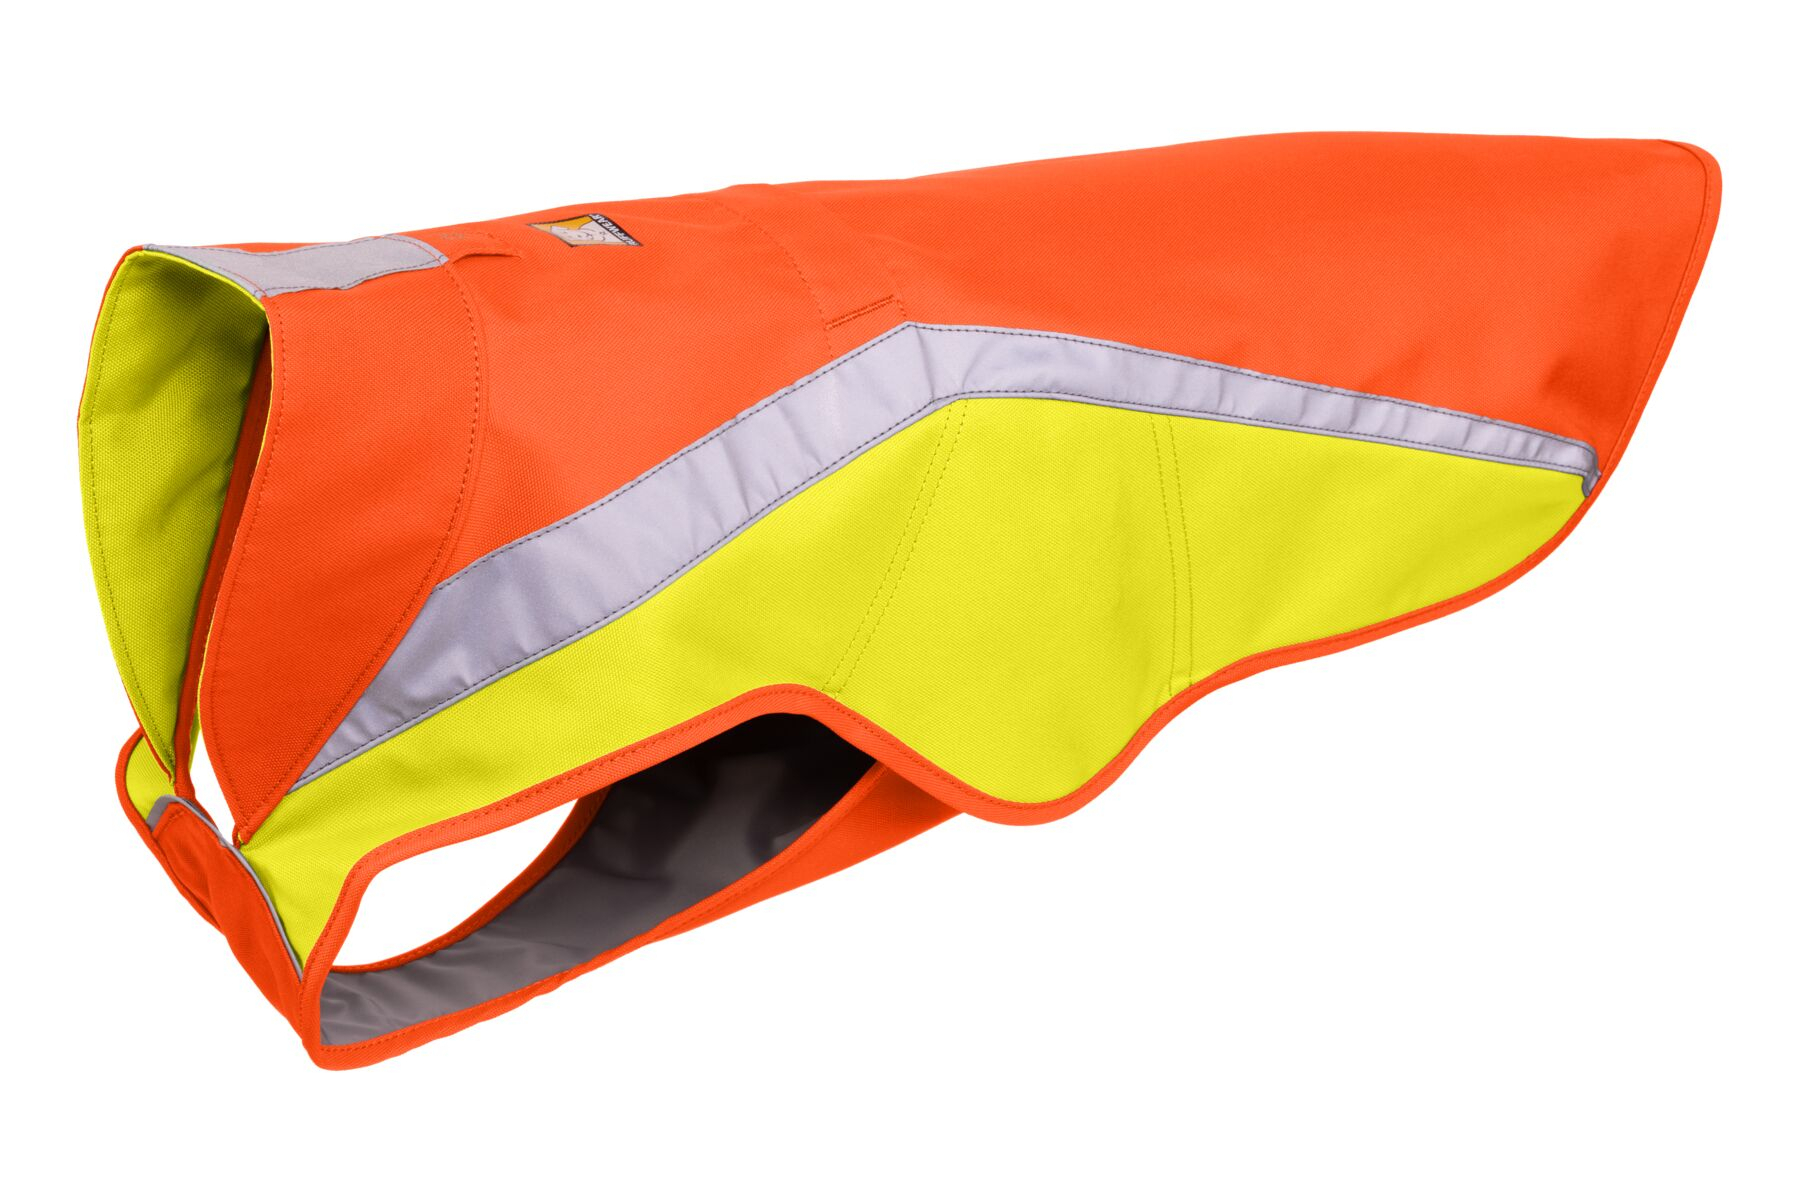 Giacca Lumenglow alta visibilità Blaze Arancione - diverse taglie disponibili